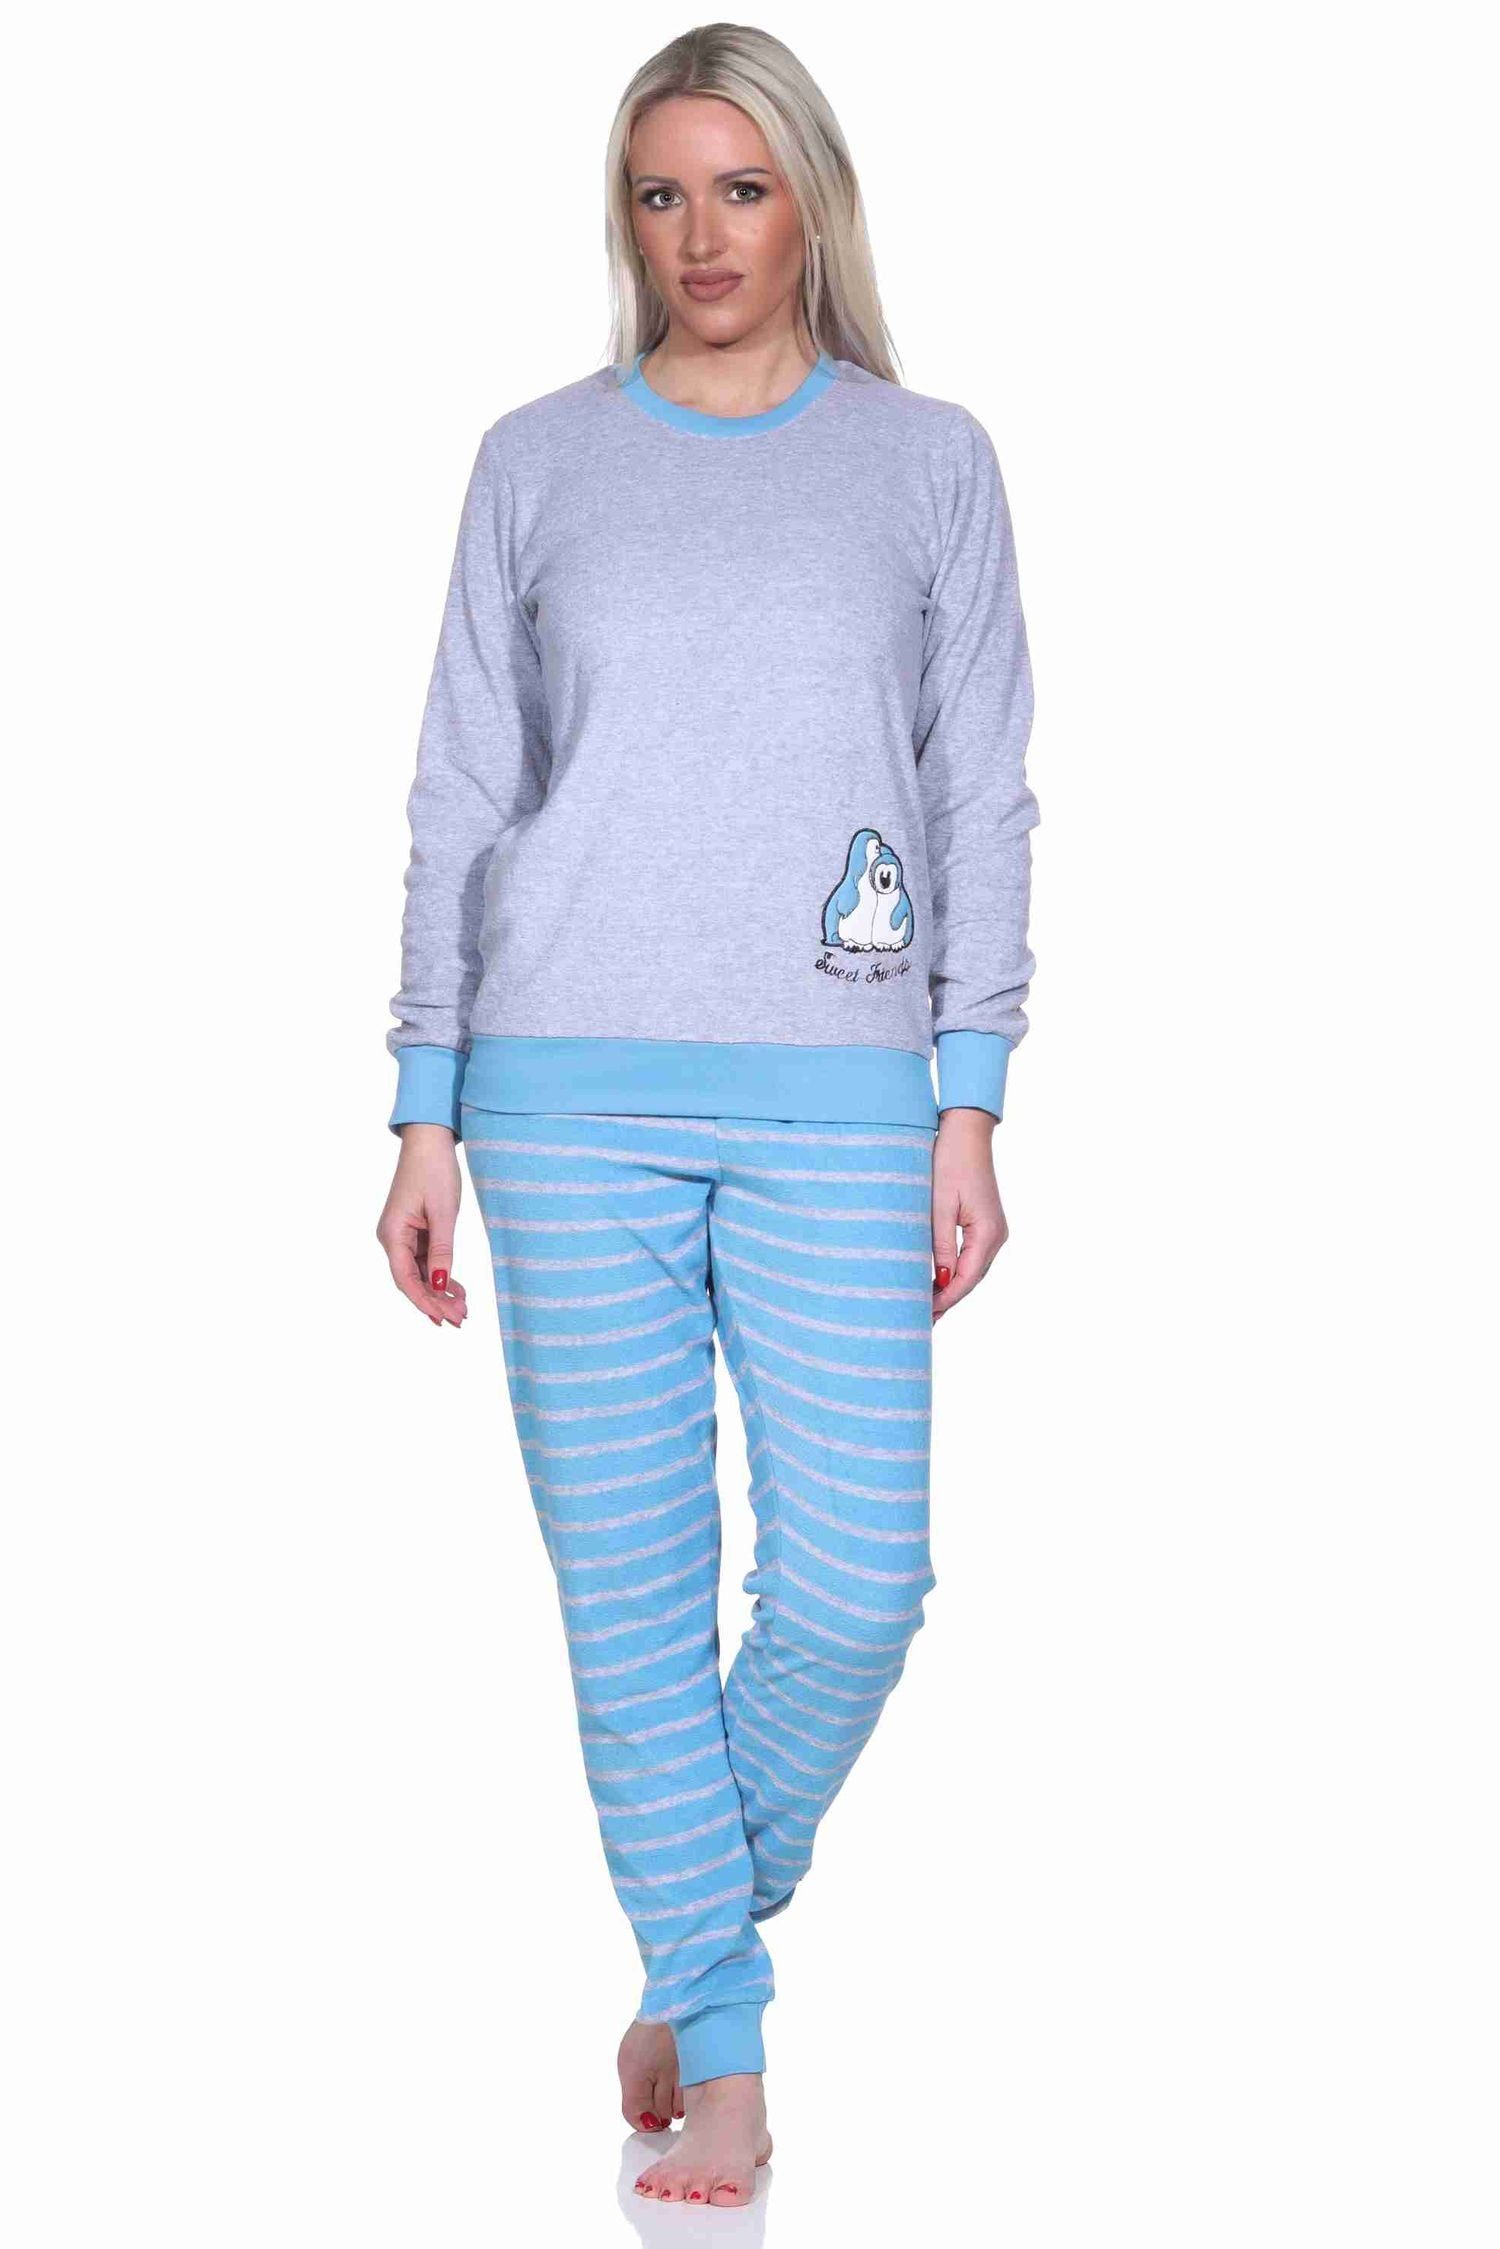 hellblau Stickerei Normann und Pinguin langarm Pyjama mit Pyjama Damen Bündchen Frottee